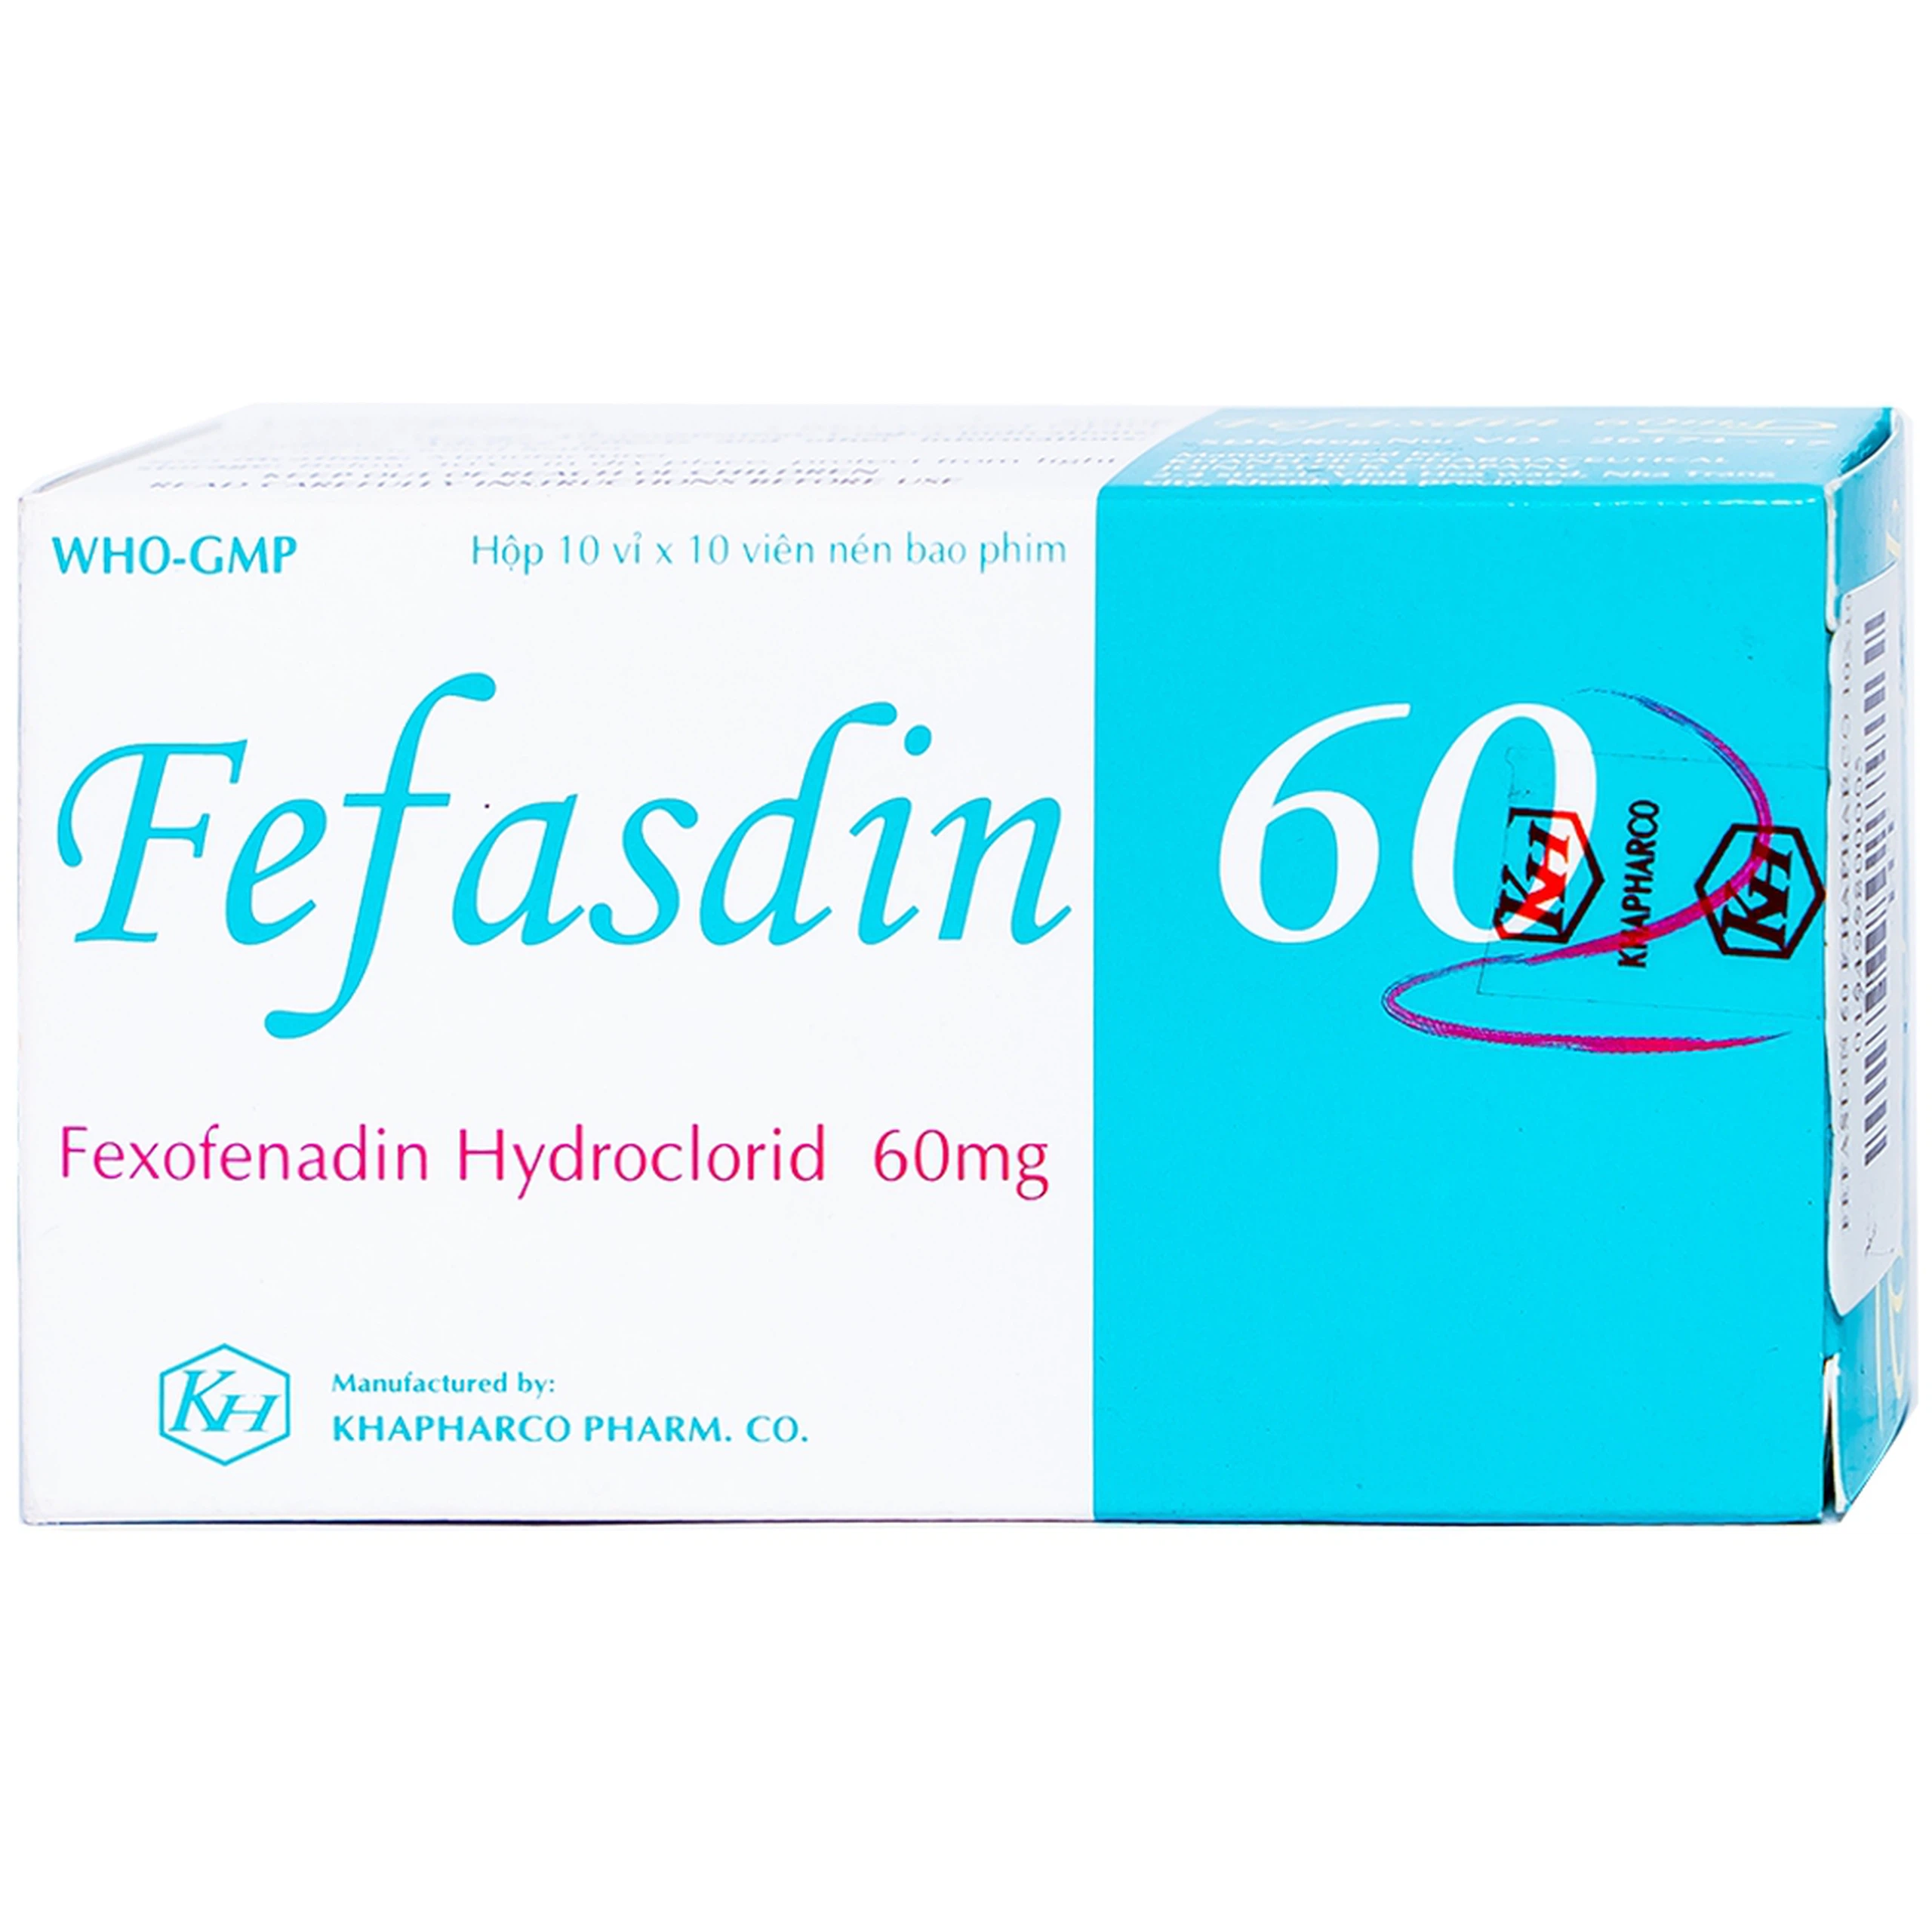 Thuốc Fefasdin 60 Khapharco điều trị viêm mũi dị ứng, mày đay mạn tính vô căn (10 vỉ x 10 viên)